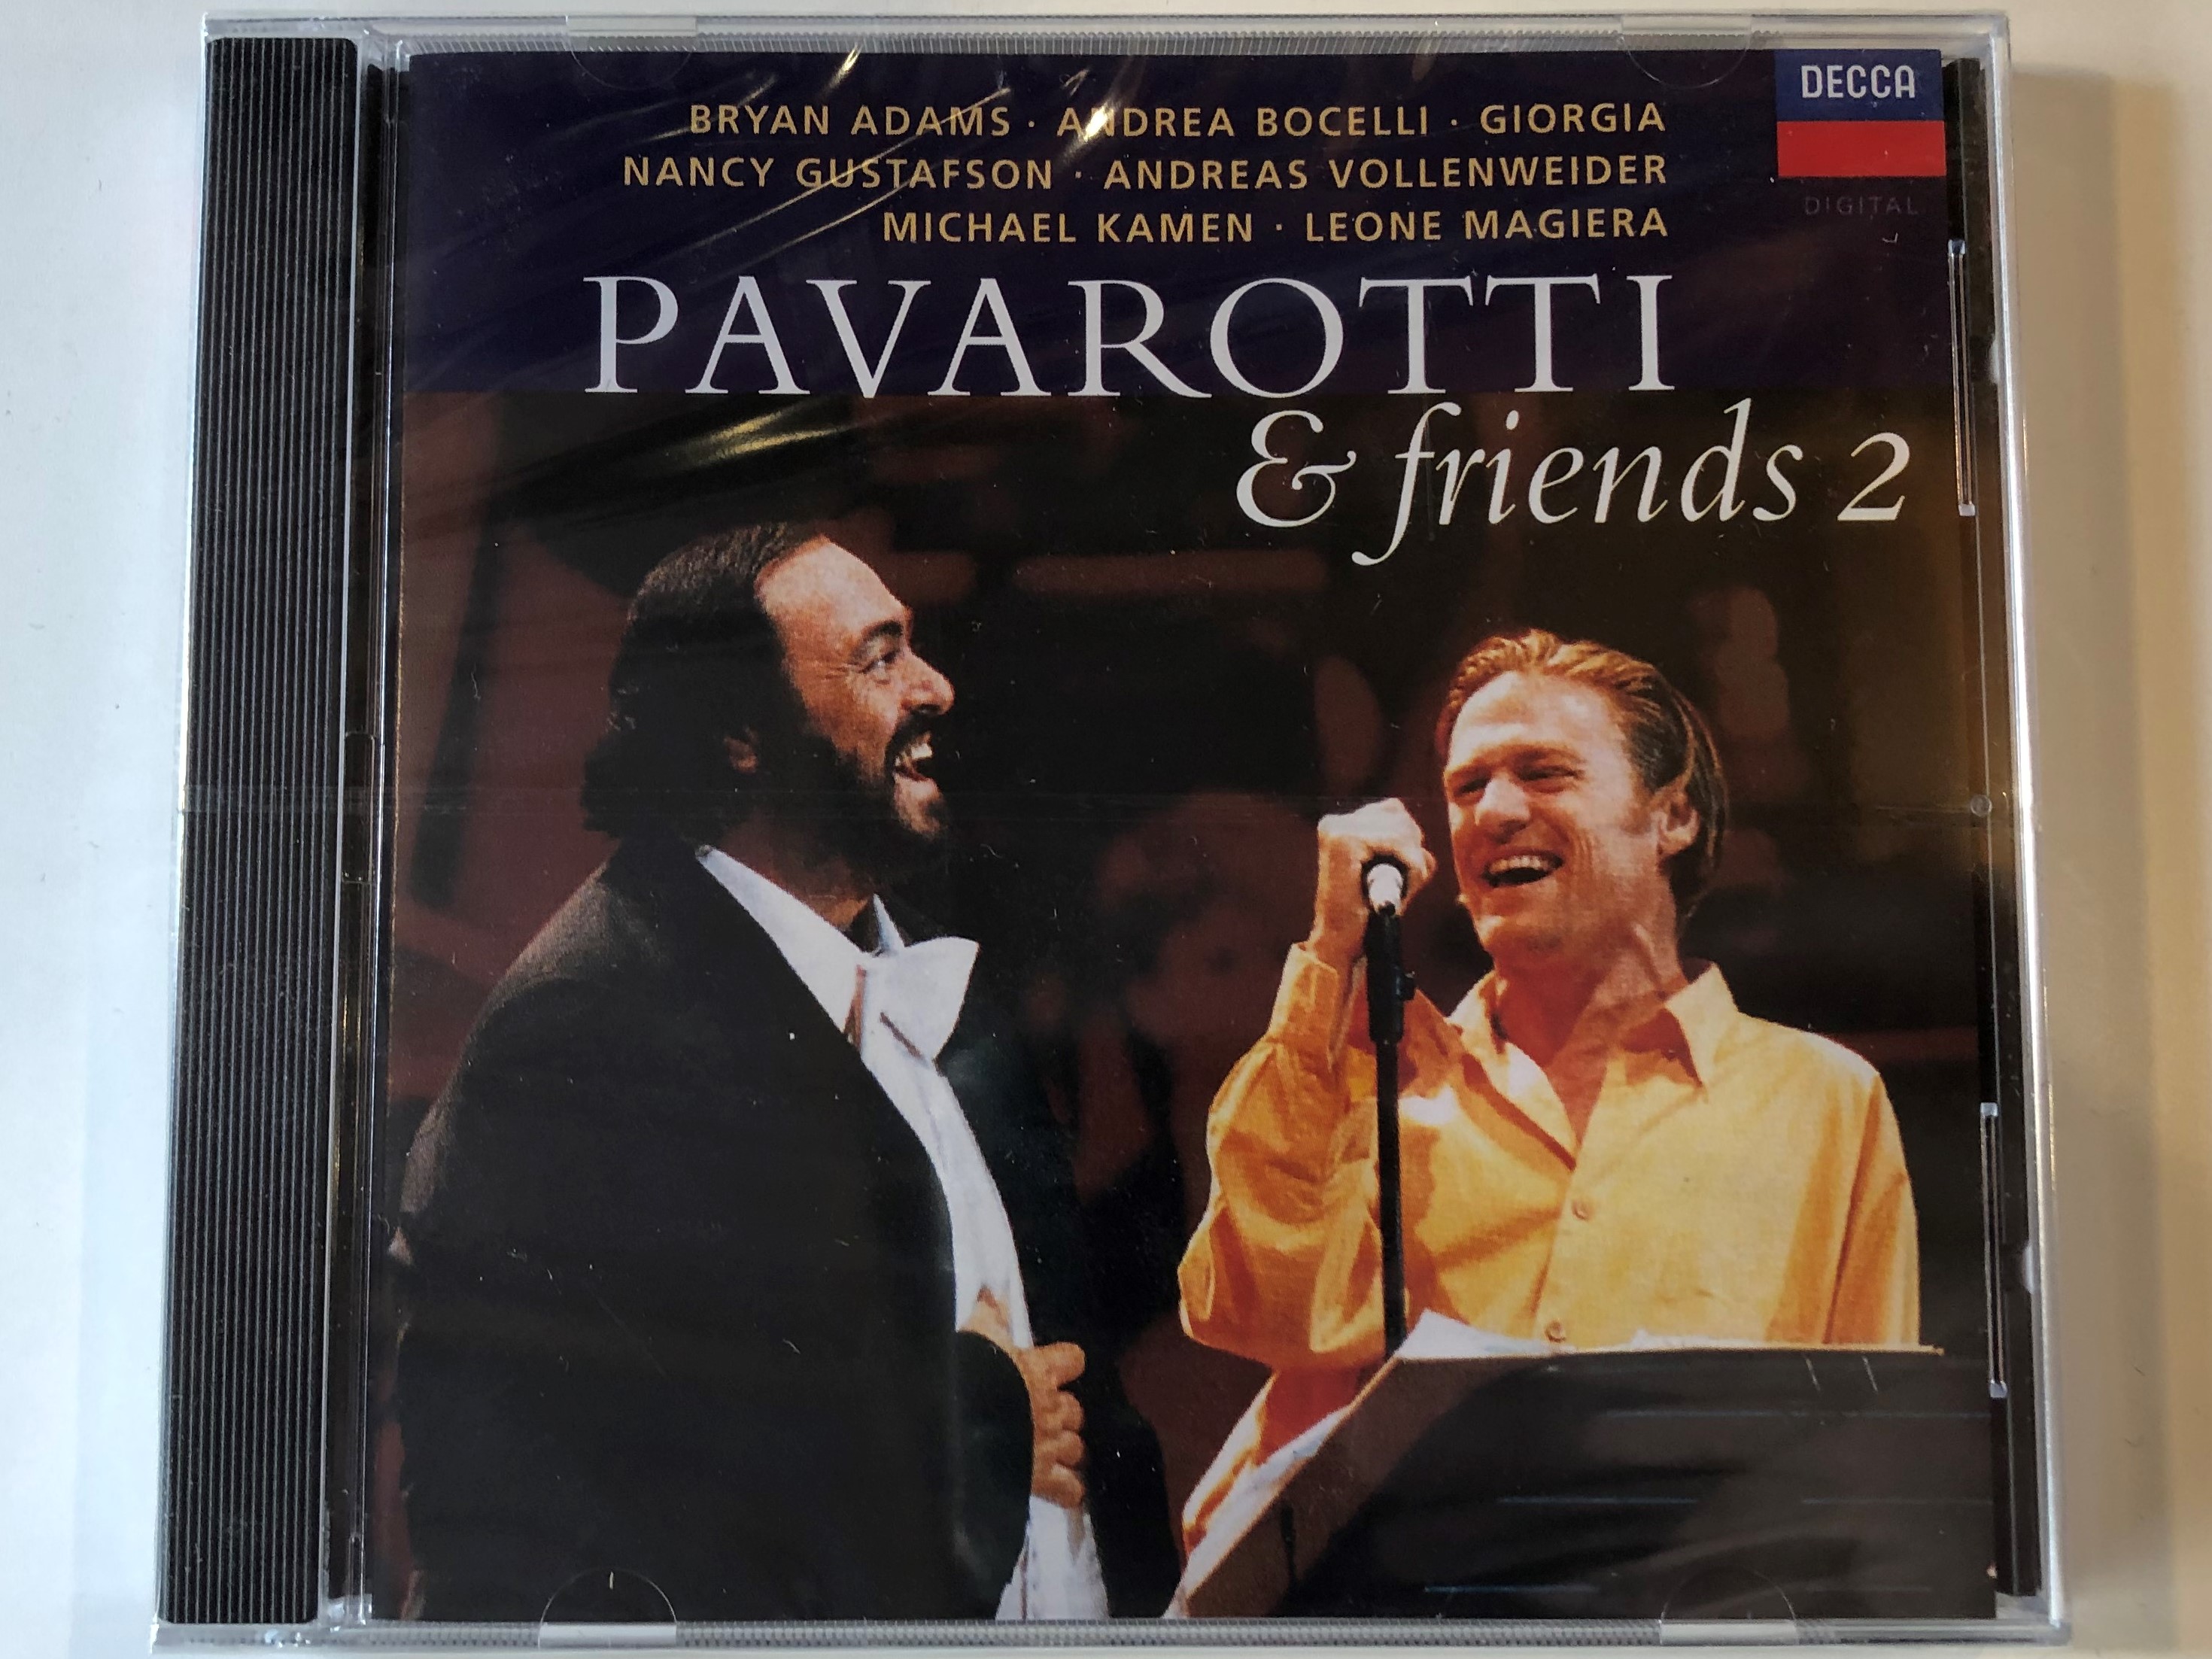 pavarotti-friends-2-bryan-adams-andrea-bocelli-giorgia-nancy-gustafson-andreas-vollenweider-michael-kamen-leone-magiera-decca-audio-cd-1995-444-460-2-1-.jpg